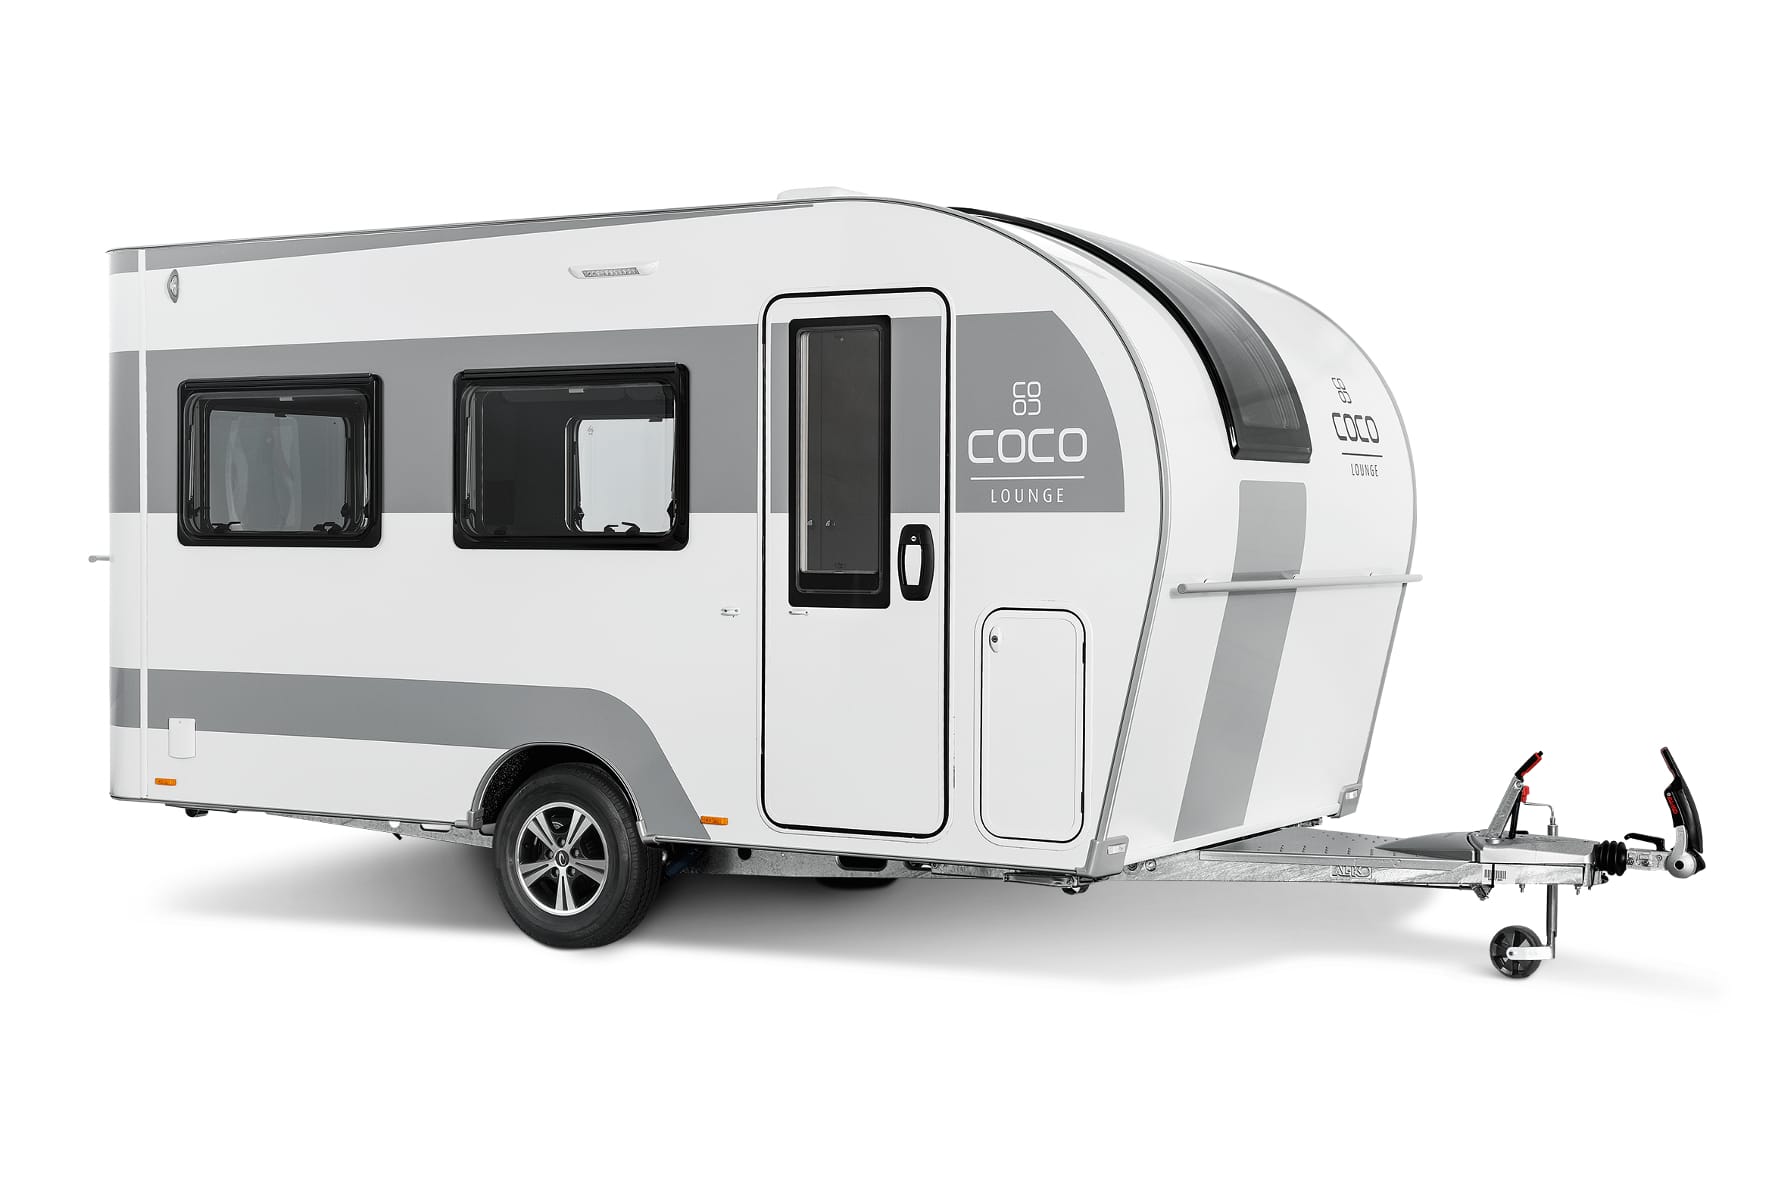 Neuer Coco: Mit schickem Design und neuen Ideen frischt er das Wohnwagen-Angebot auf.